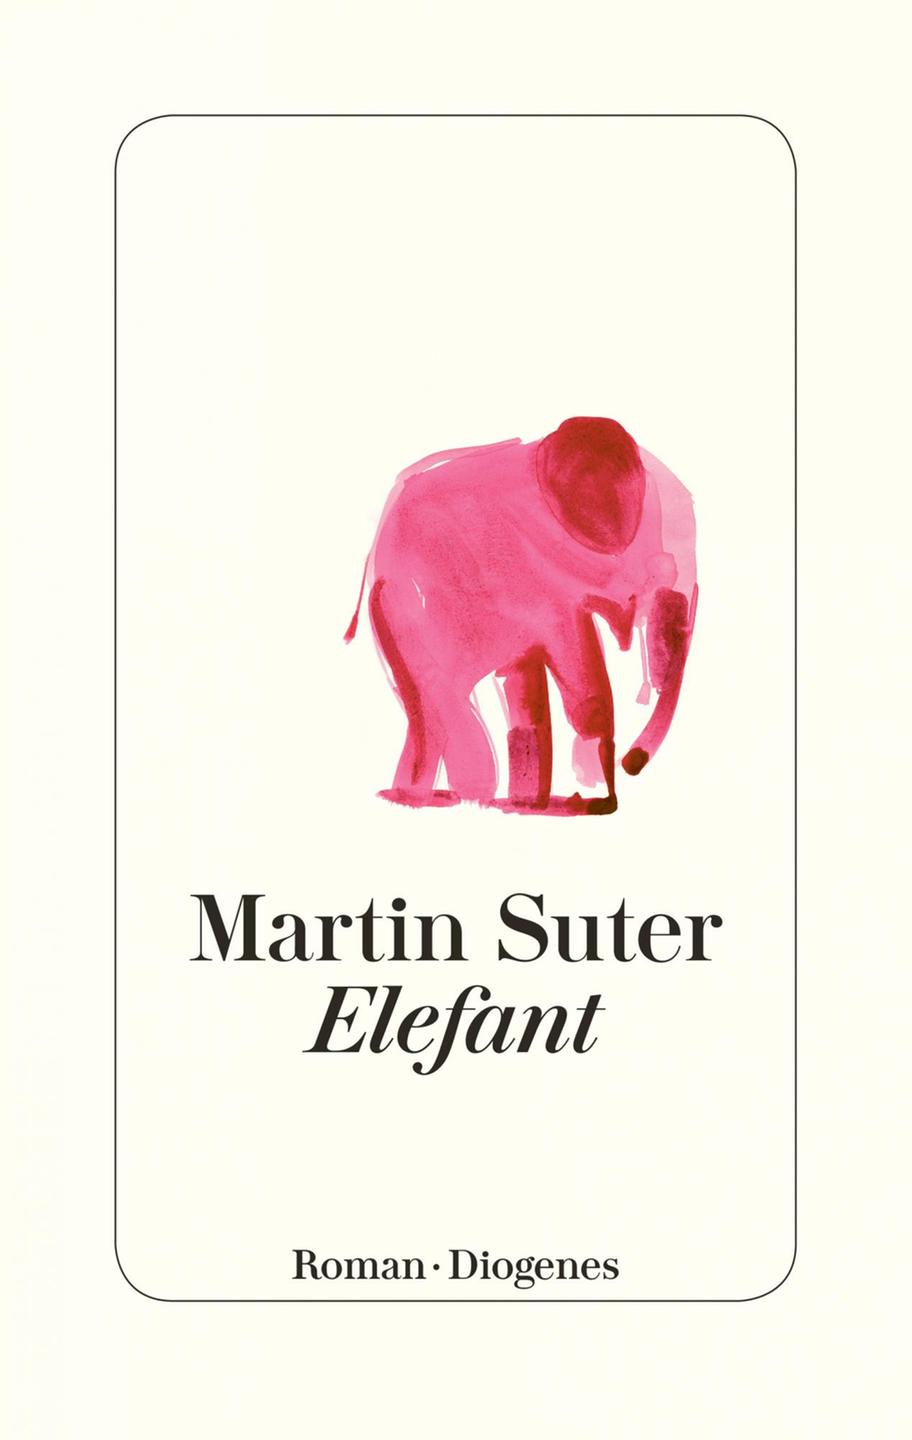 Das Cover des Buches "Elefant" des Autors Martin Suter.